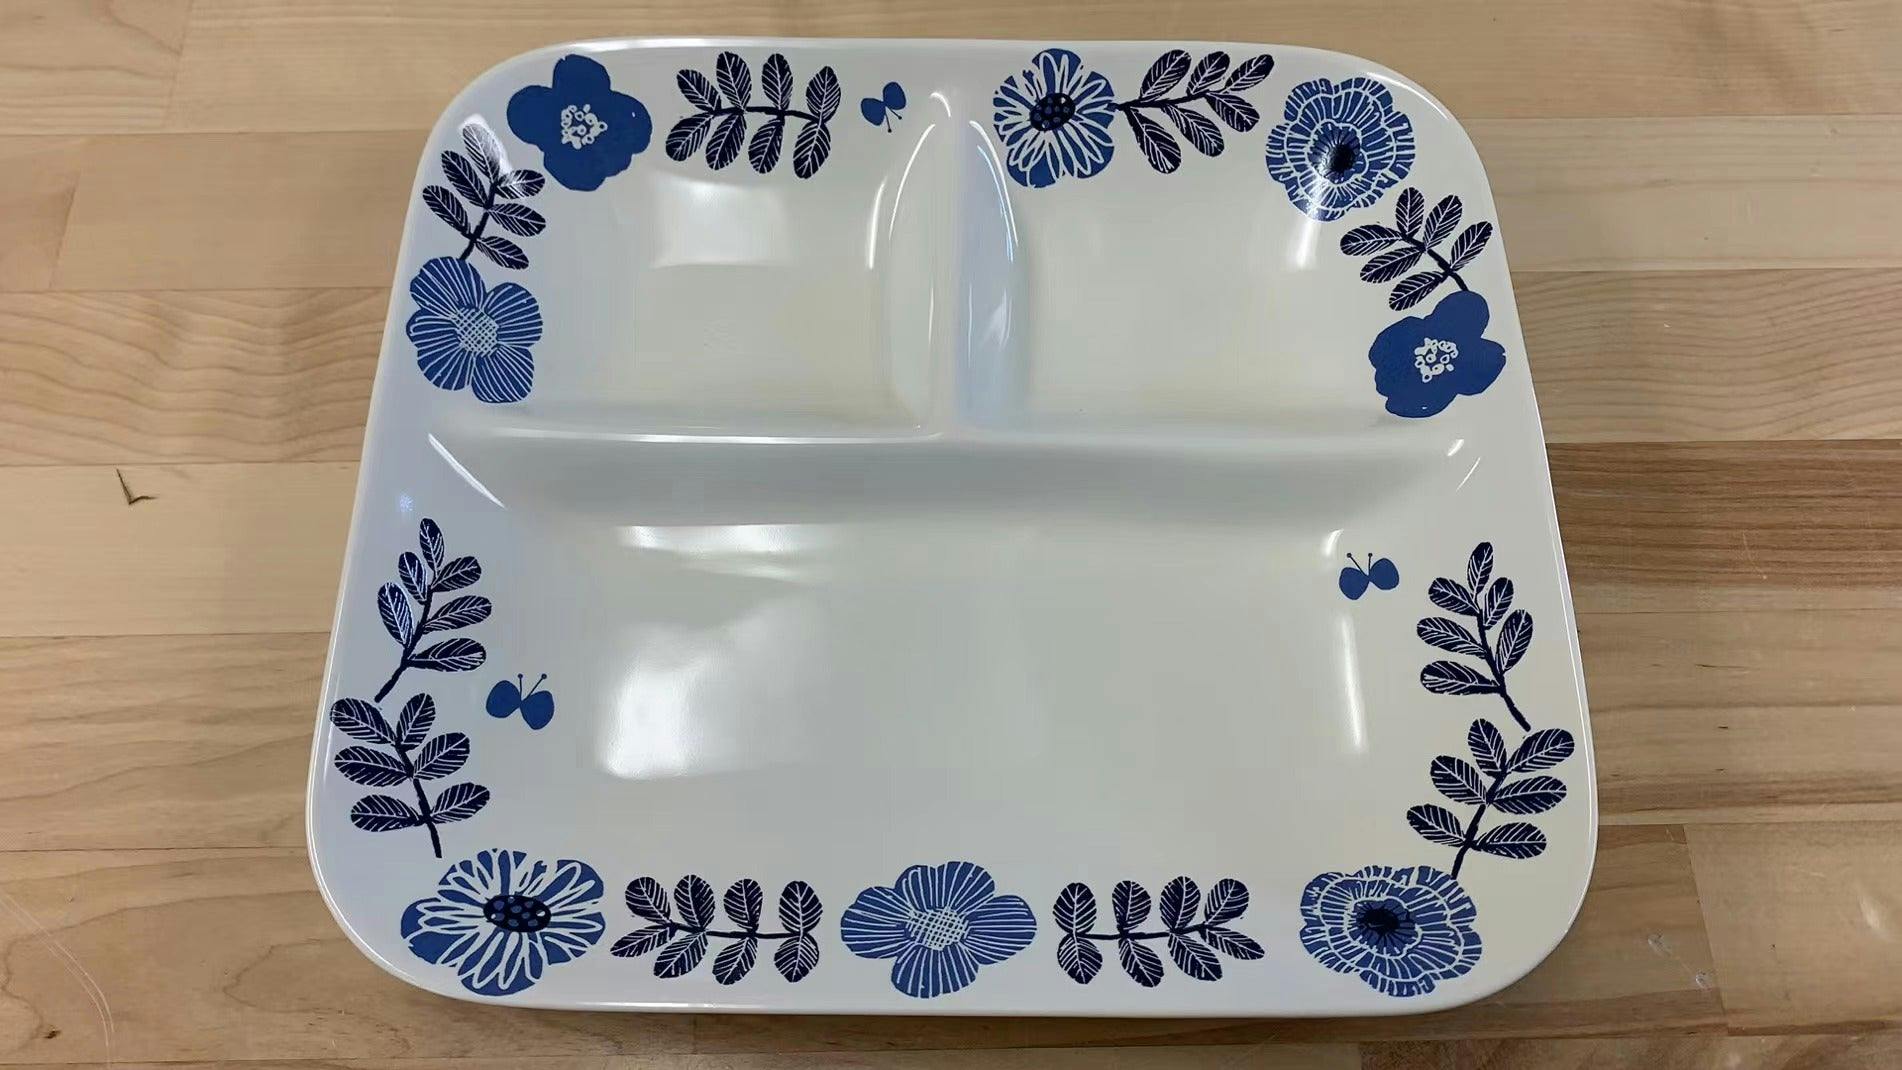 日本制 BELLE MAISON 分餐 餐盘 Bento Plate 北欧风格设计 可用洗碗机清洗